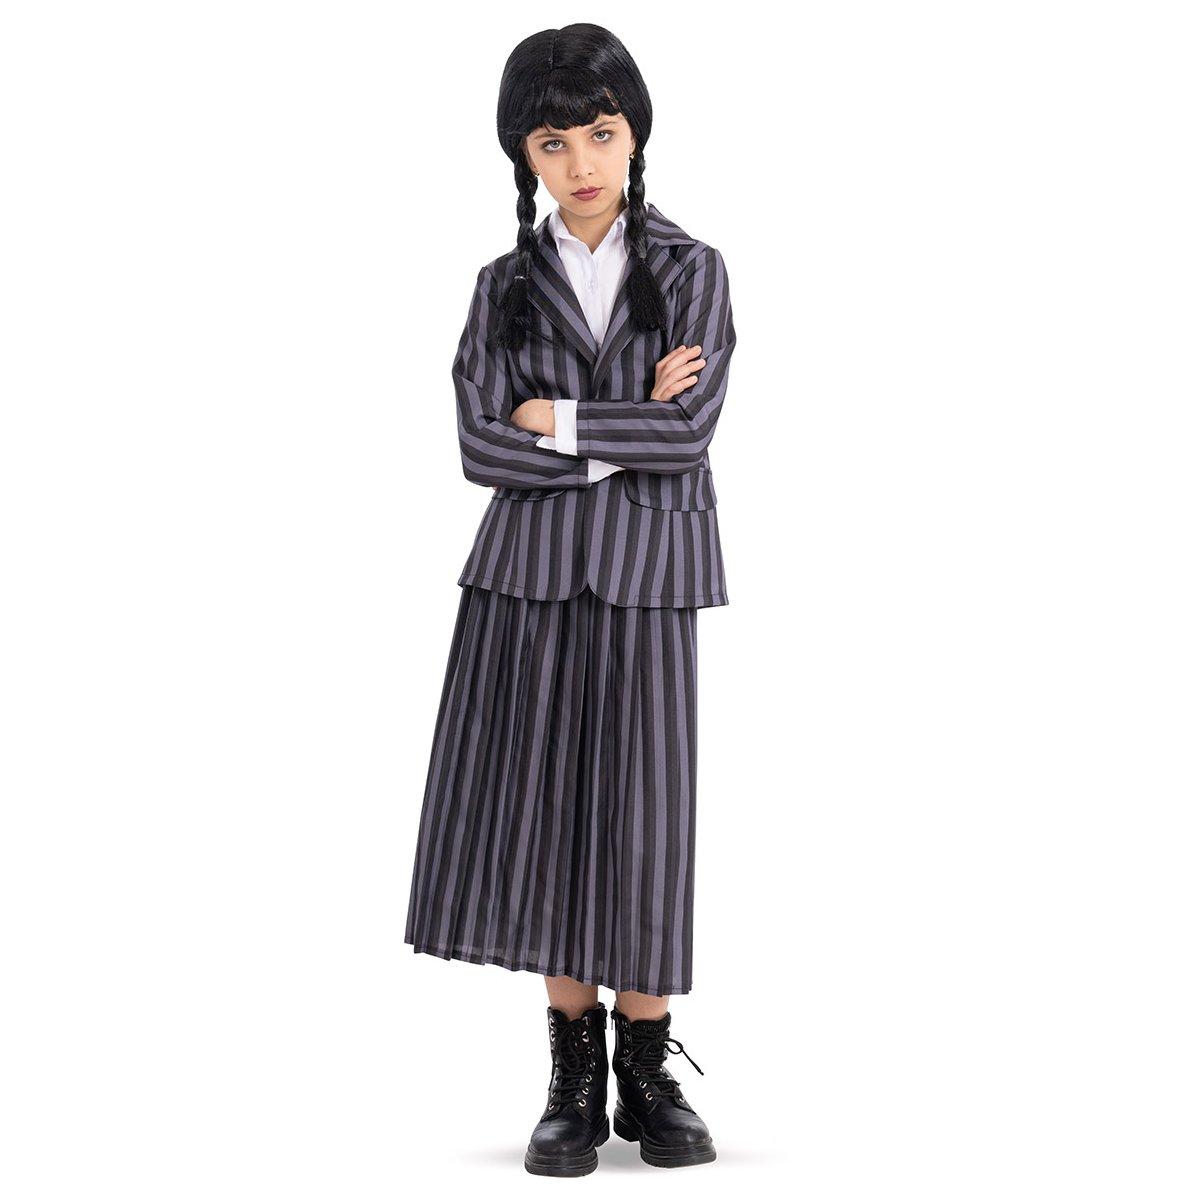 Costume Mercoled Addams College per Bambina - Acquista Online su